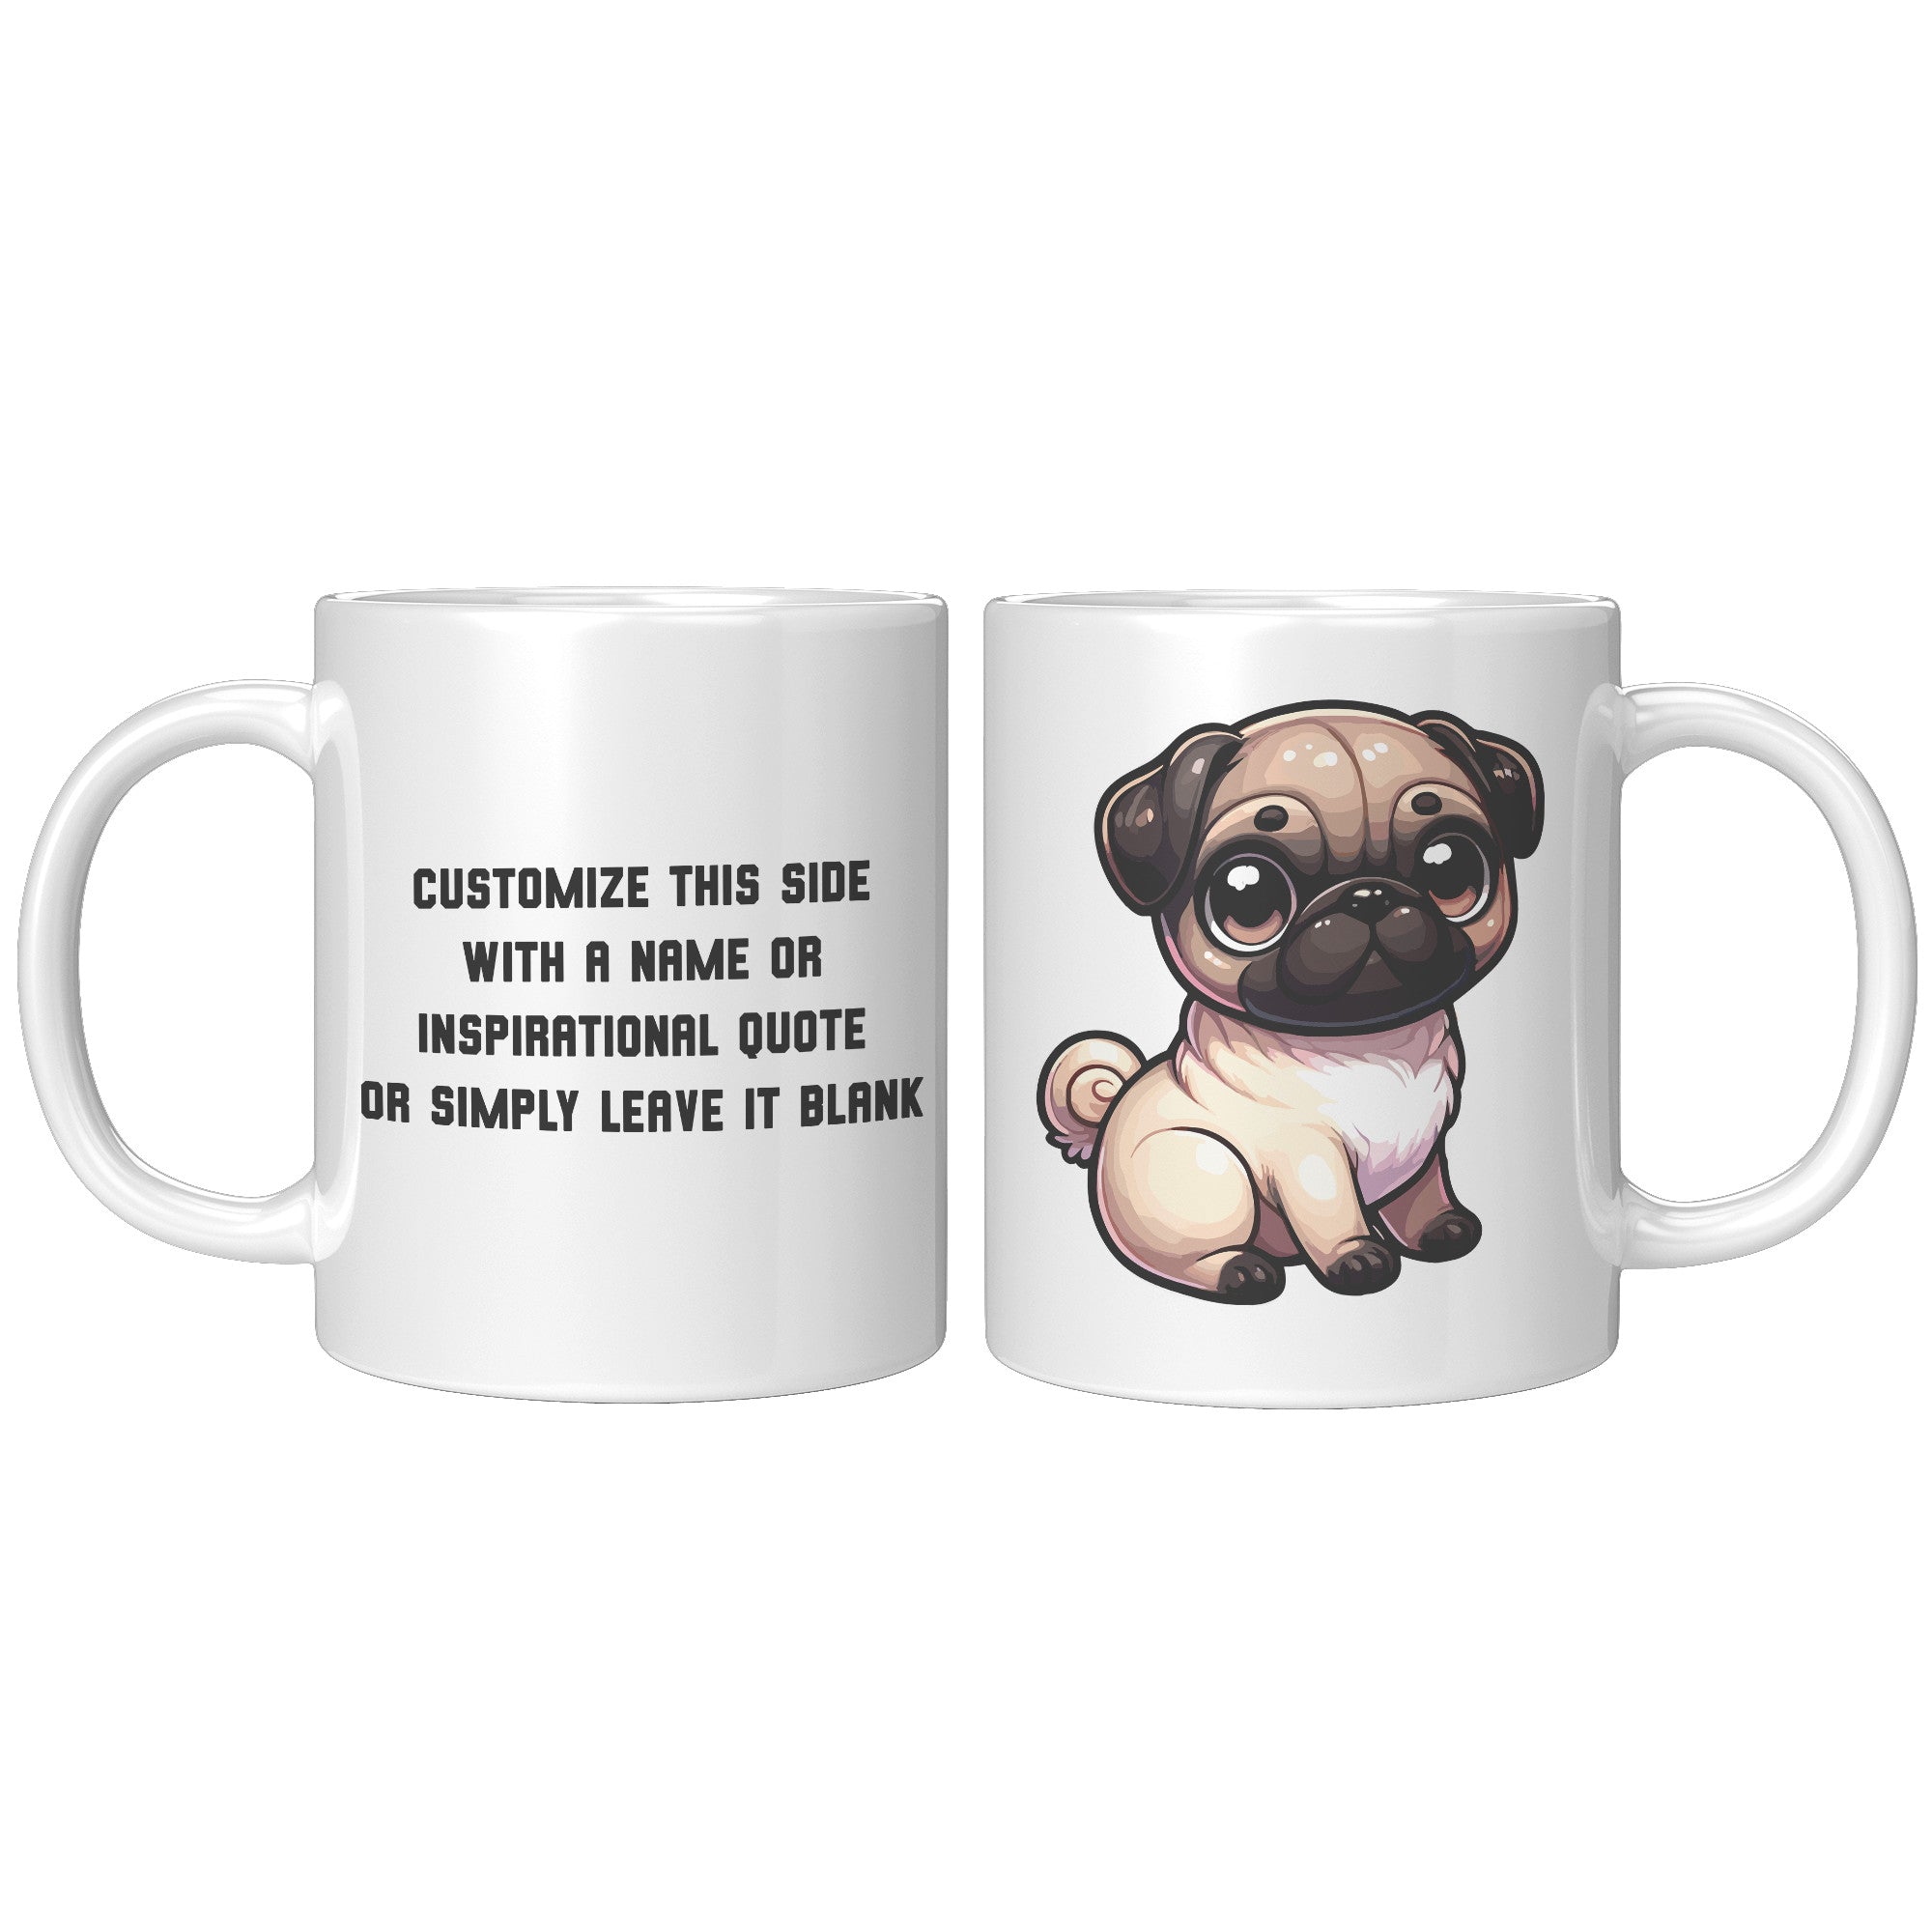 11oz Adorable Pug Cartoon Coffee Mug - Pug Lover Coffee Mug - Perfect Gift for Pug Owners - Cute Wrinkly Dog Coffee Mug" - X